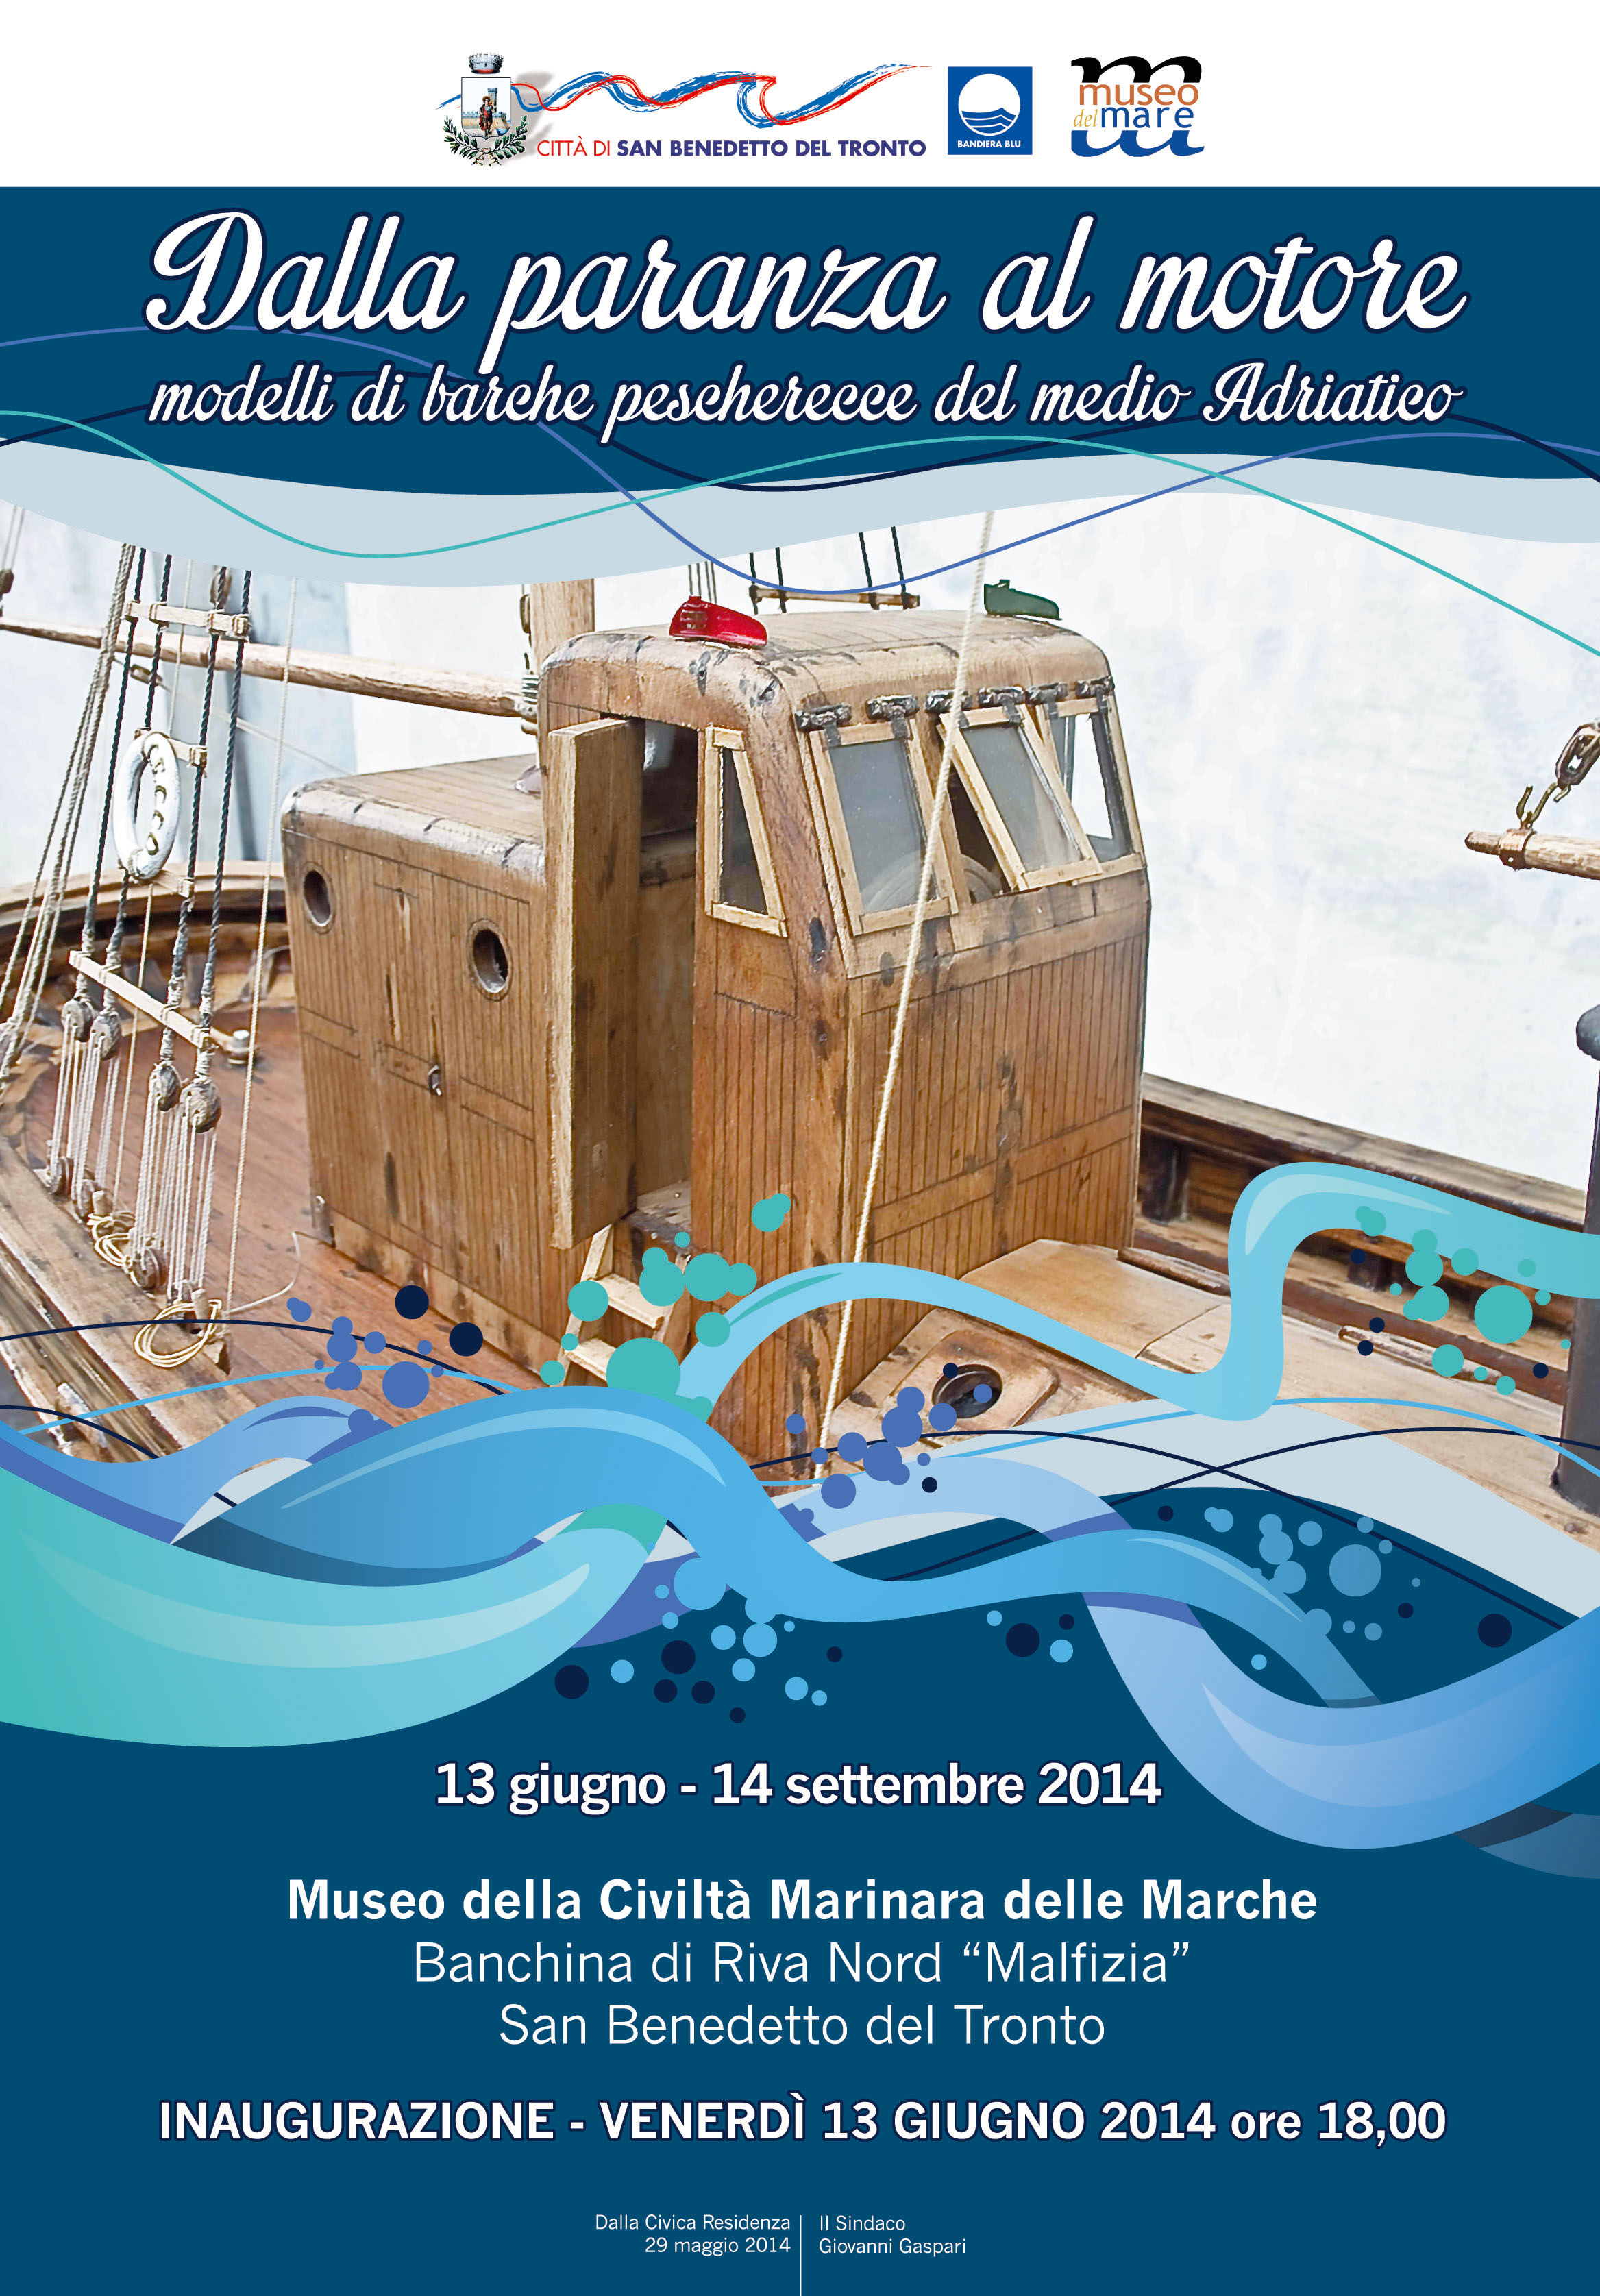 Proroga mostra "Dalla paranza al motore" - modelli di barche pescherecce del medio Adriatico